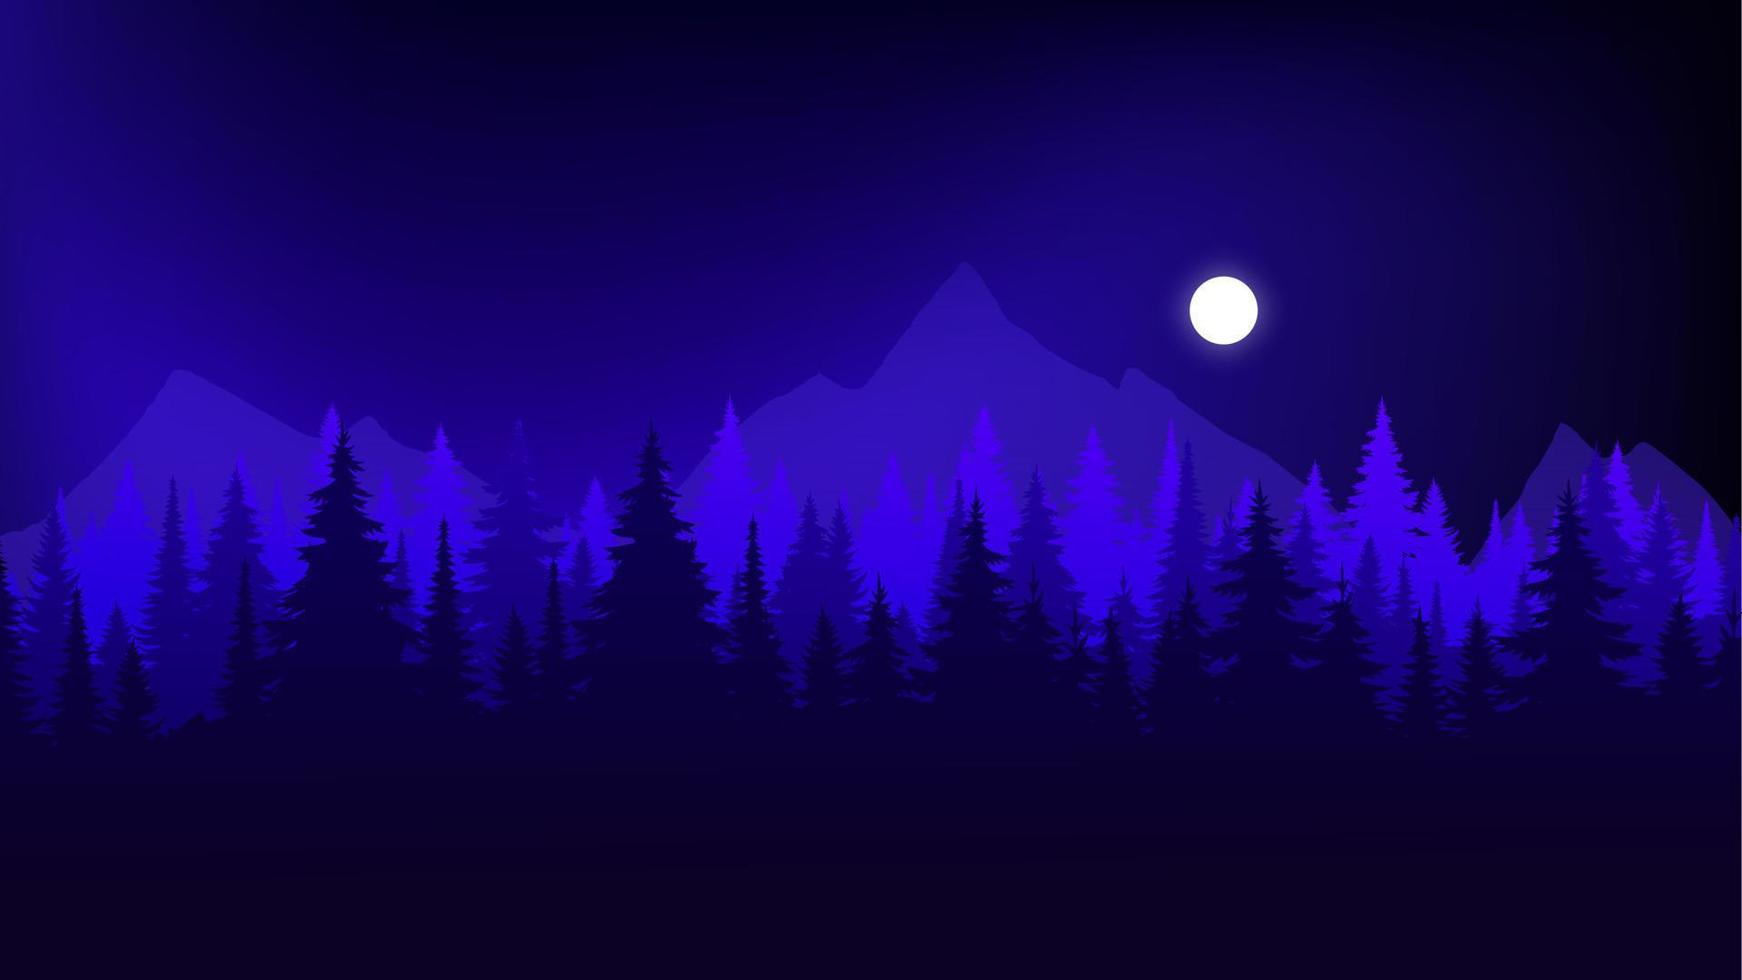 paysage de silhouette avec brouillard, forêt, pins, montagnes. illustration de la vue nocturne, éclat de la lune, brouillard. bleu marine. bon pour le papier peint, l'arrière-plan, la bannière Web, la couverture, l'affiche. vecteur